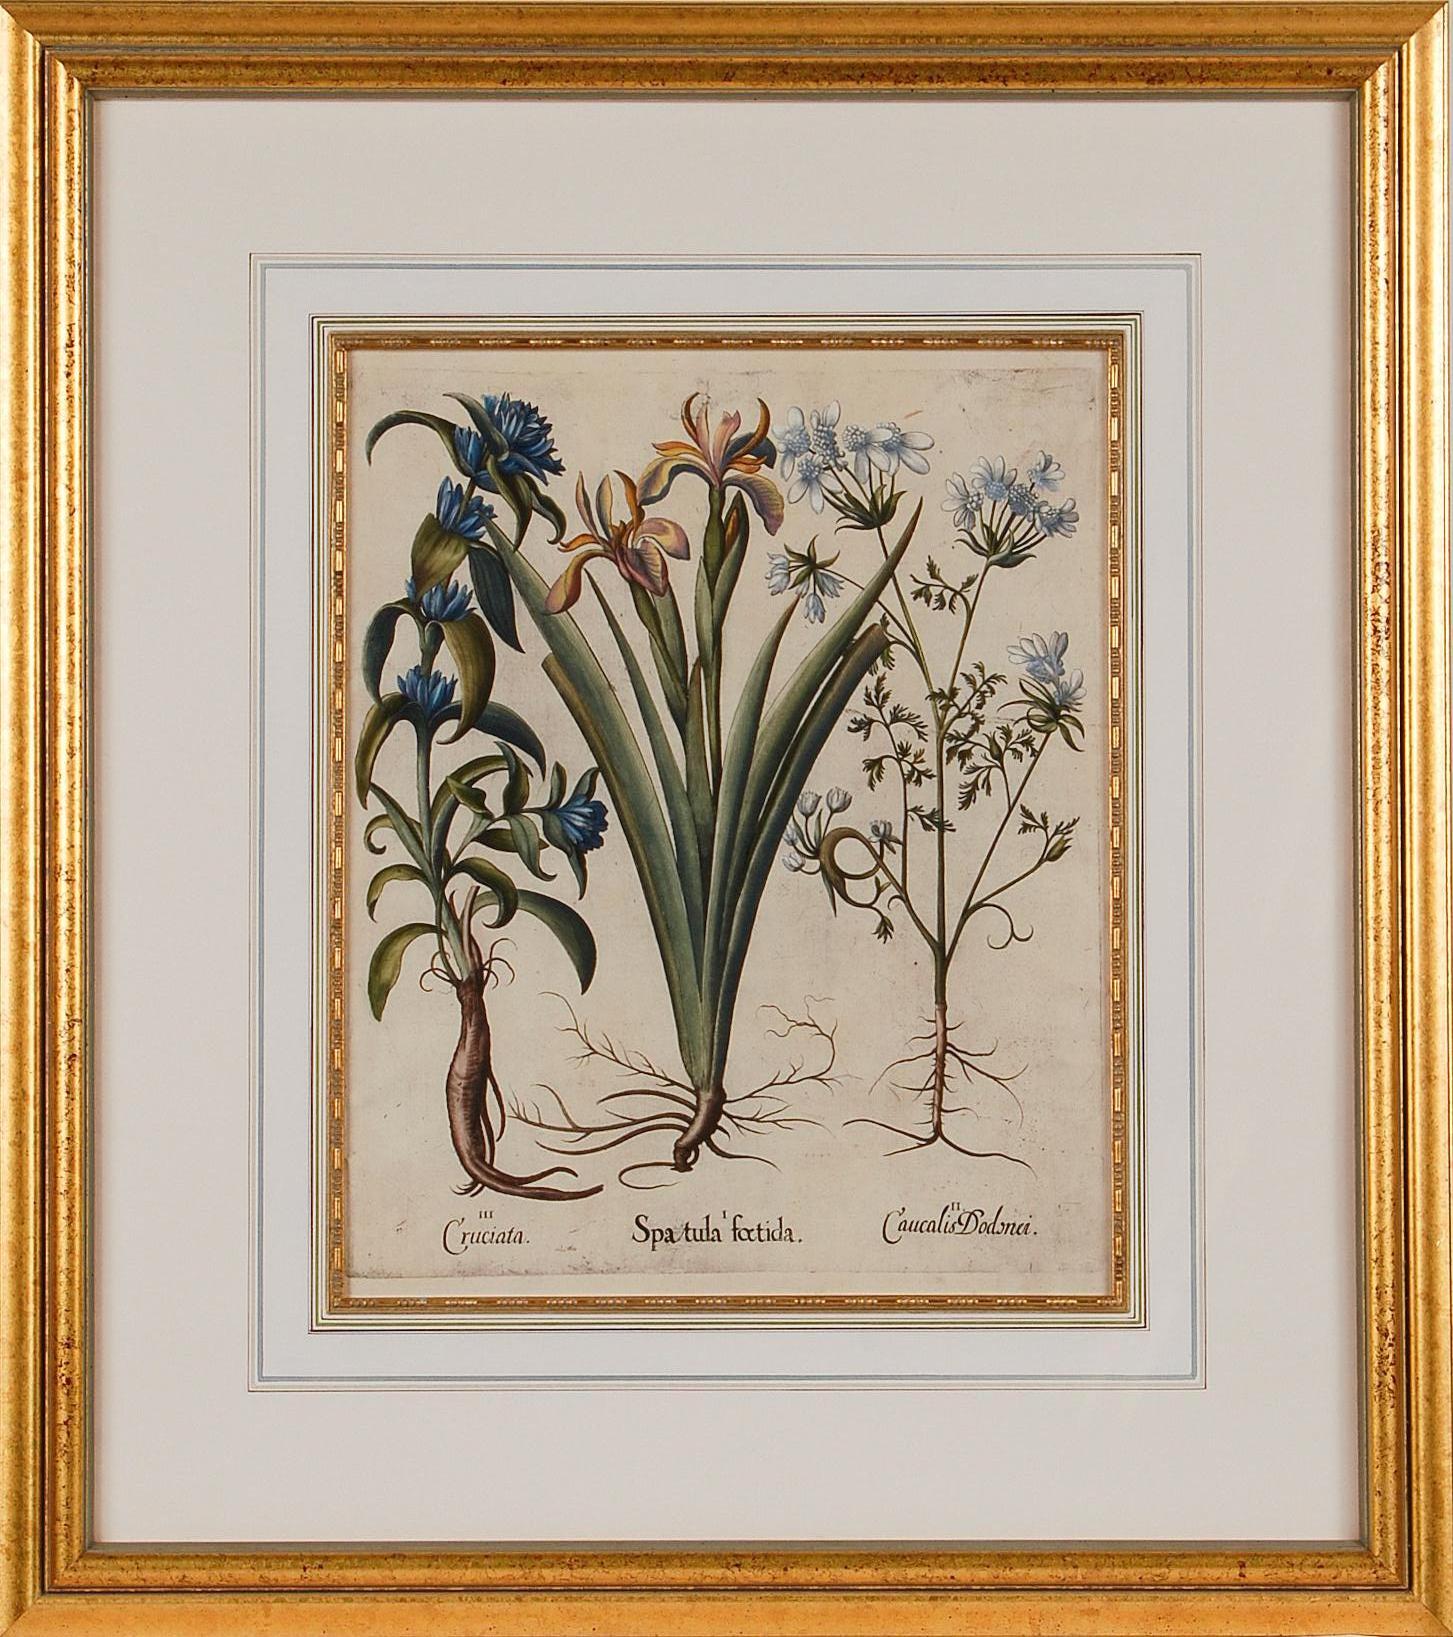 Iris und andere botanische Blumen: Gerahmte, handkolorierte Gravur von Besler aus dem 17. Jahrhundert